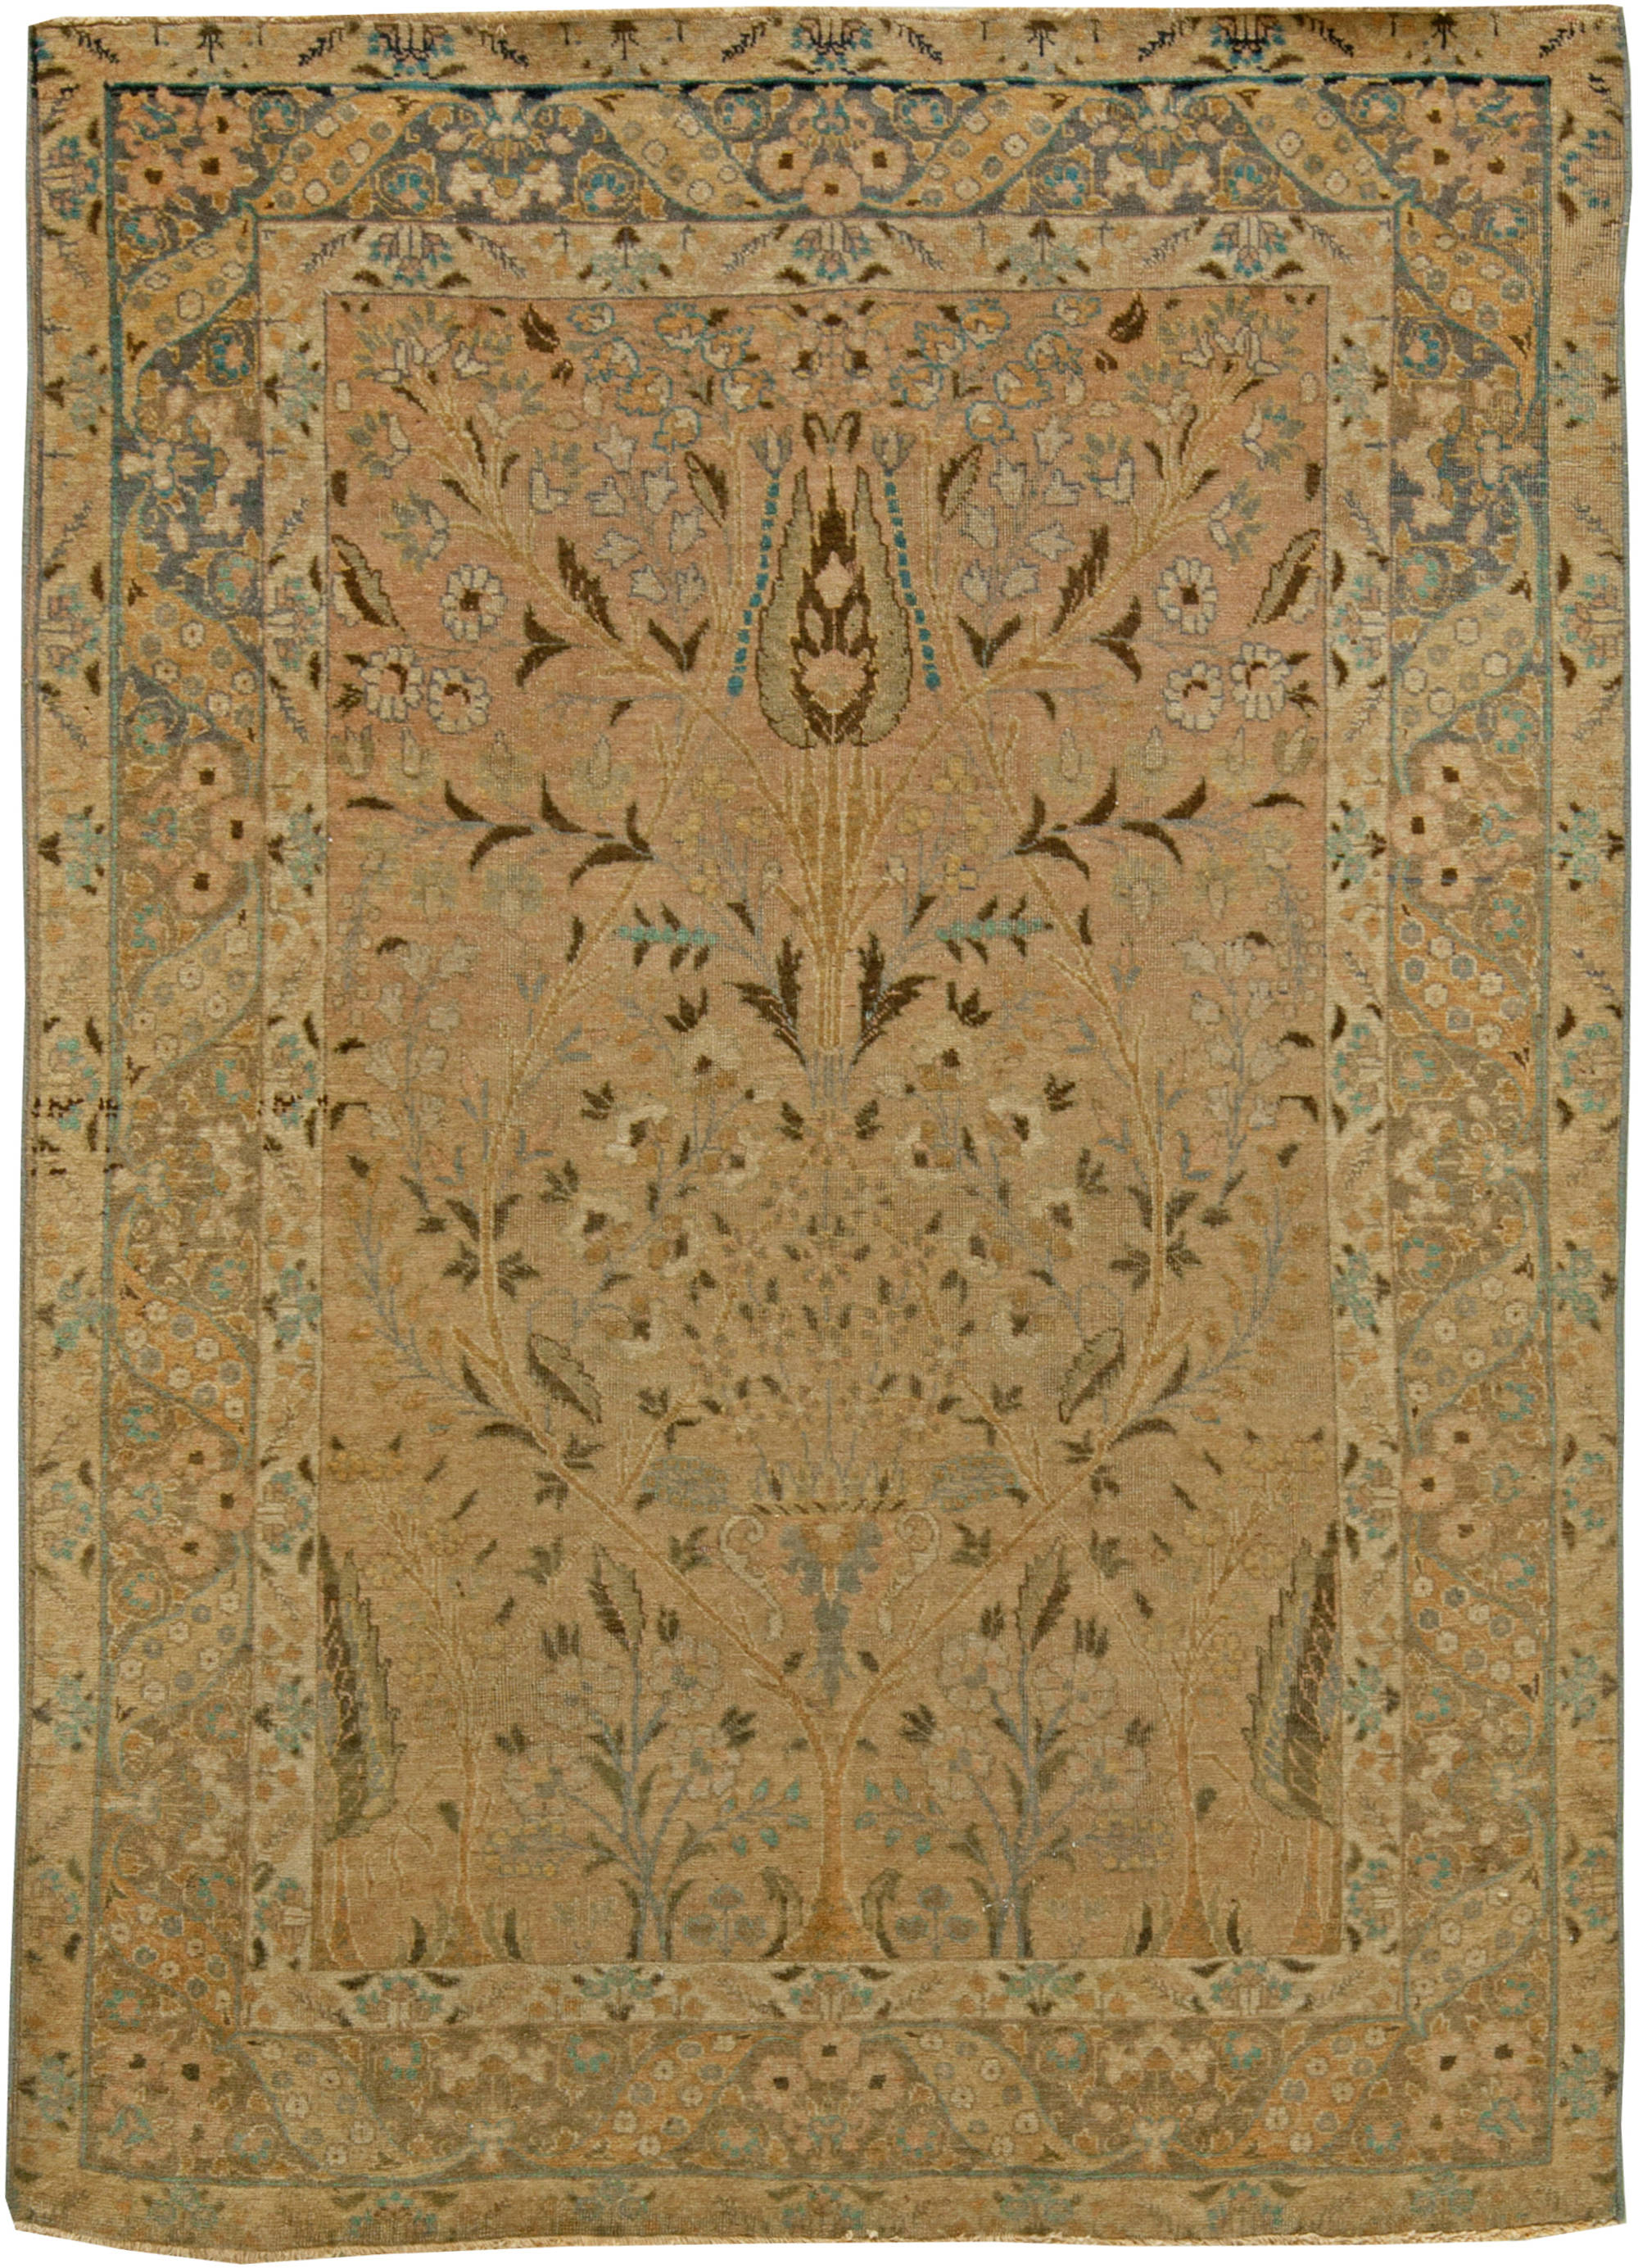 Tabriz Rugs by Doris Leslie Blau Antique Vintage Persian Carpets